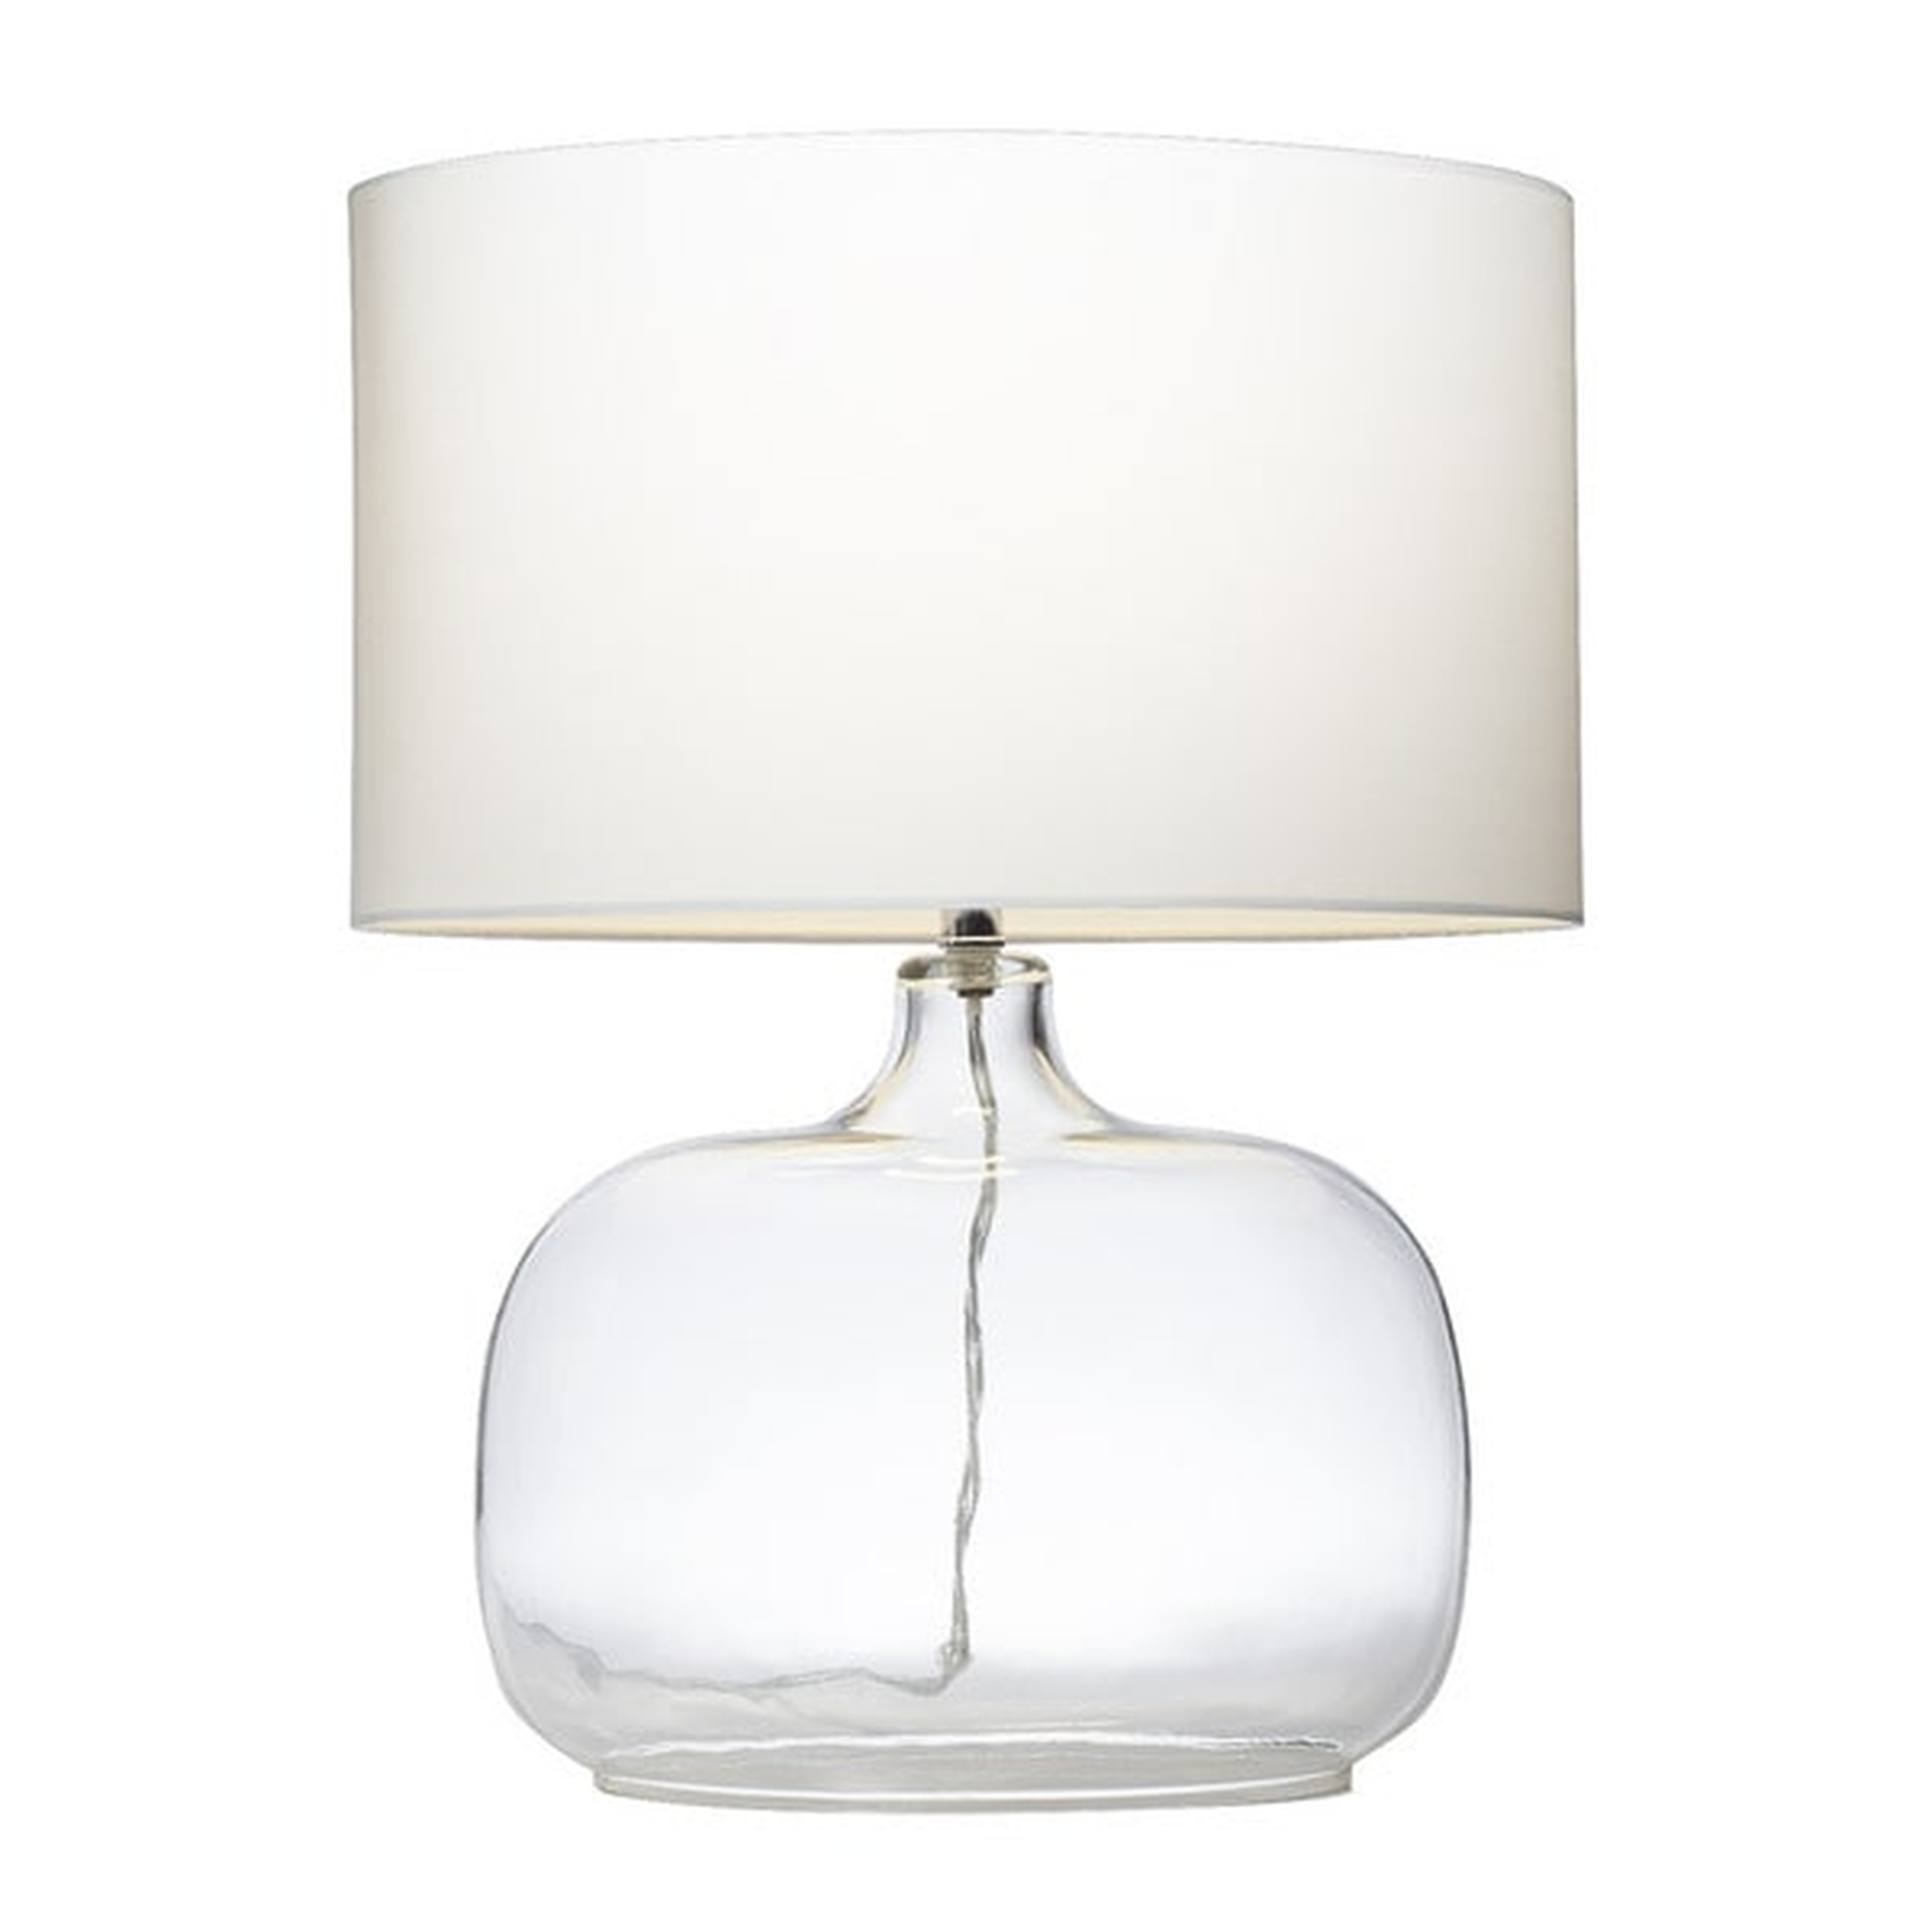 Kichler Lighting 1-light Clear Glass Table Lamp - Overstock